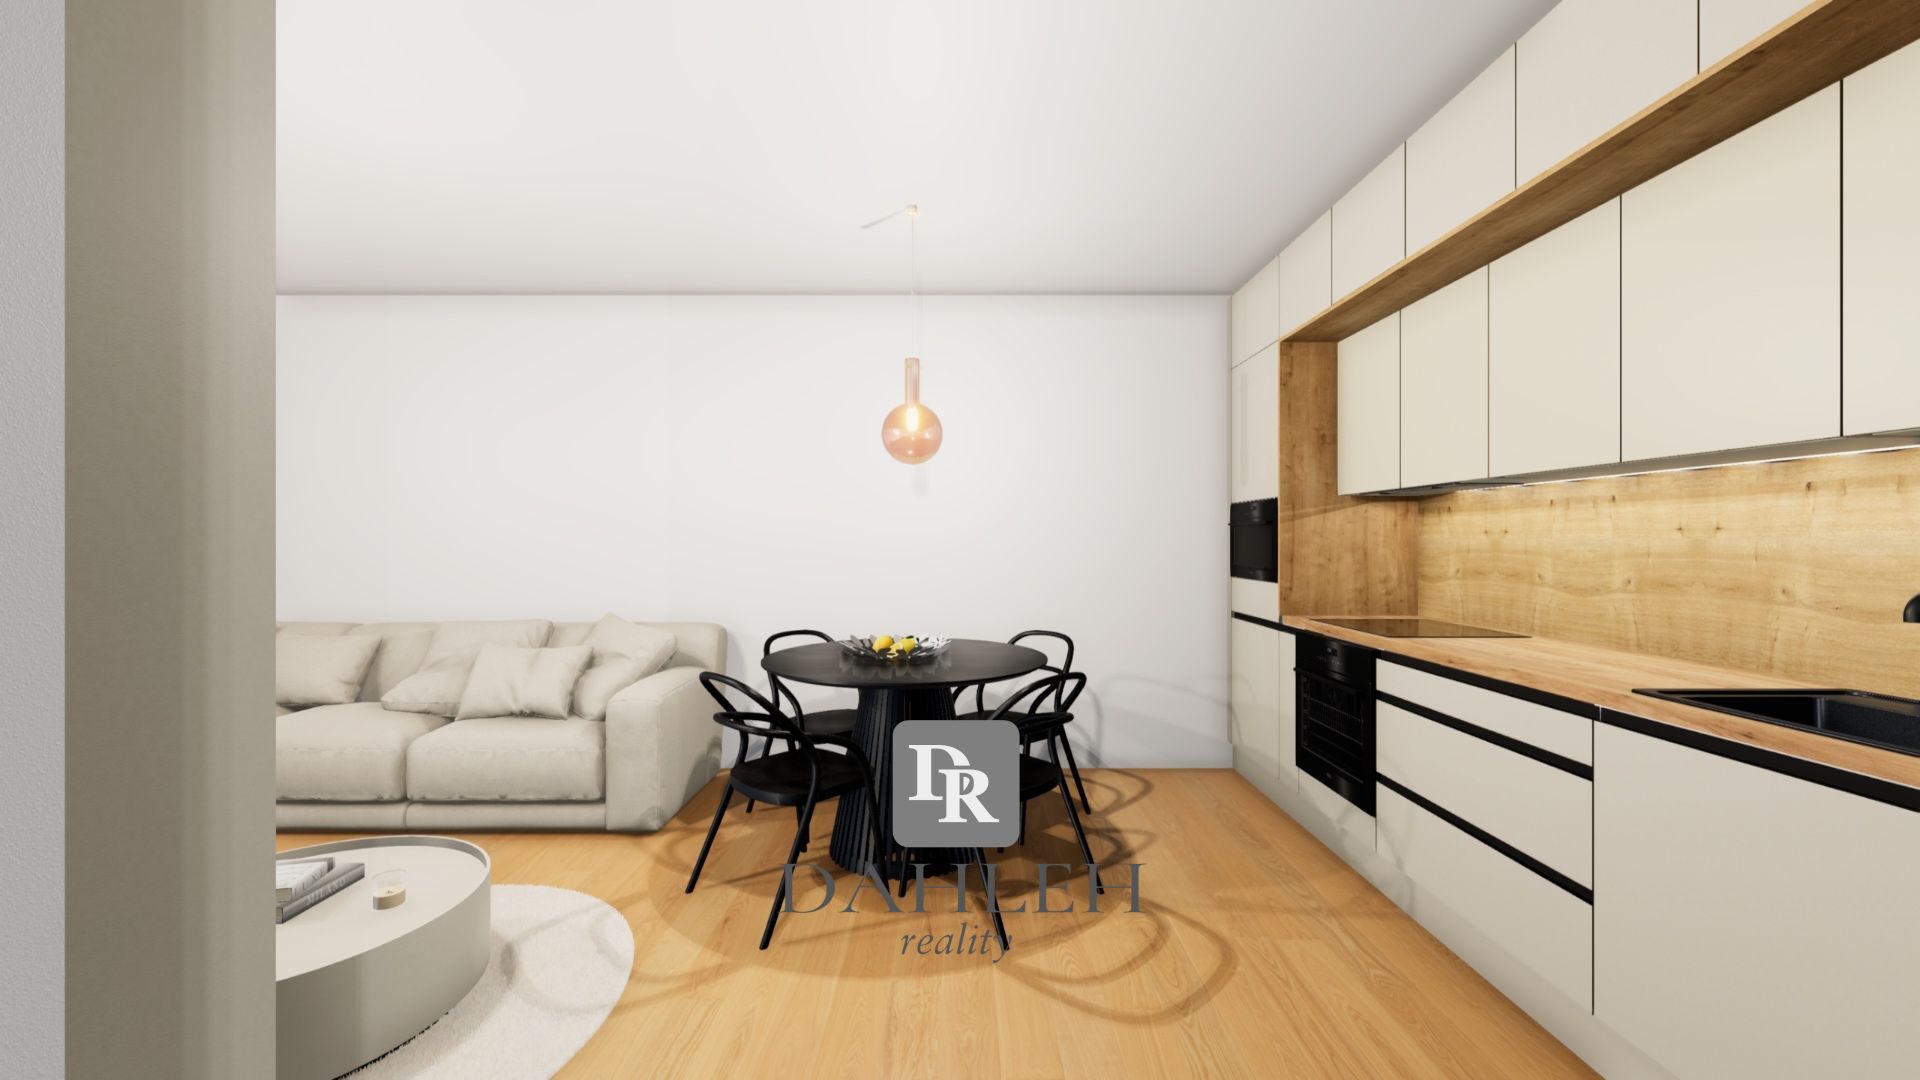 DAHLEH-Na predaj úplne nový, komfortný, 4 izbový byt v novostavbe Nesto